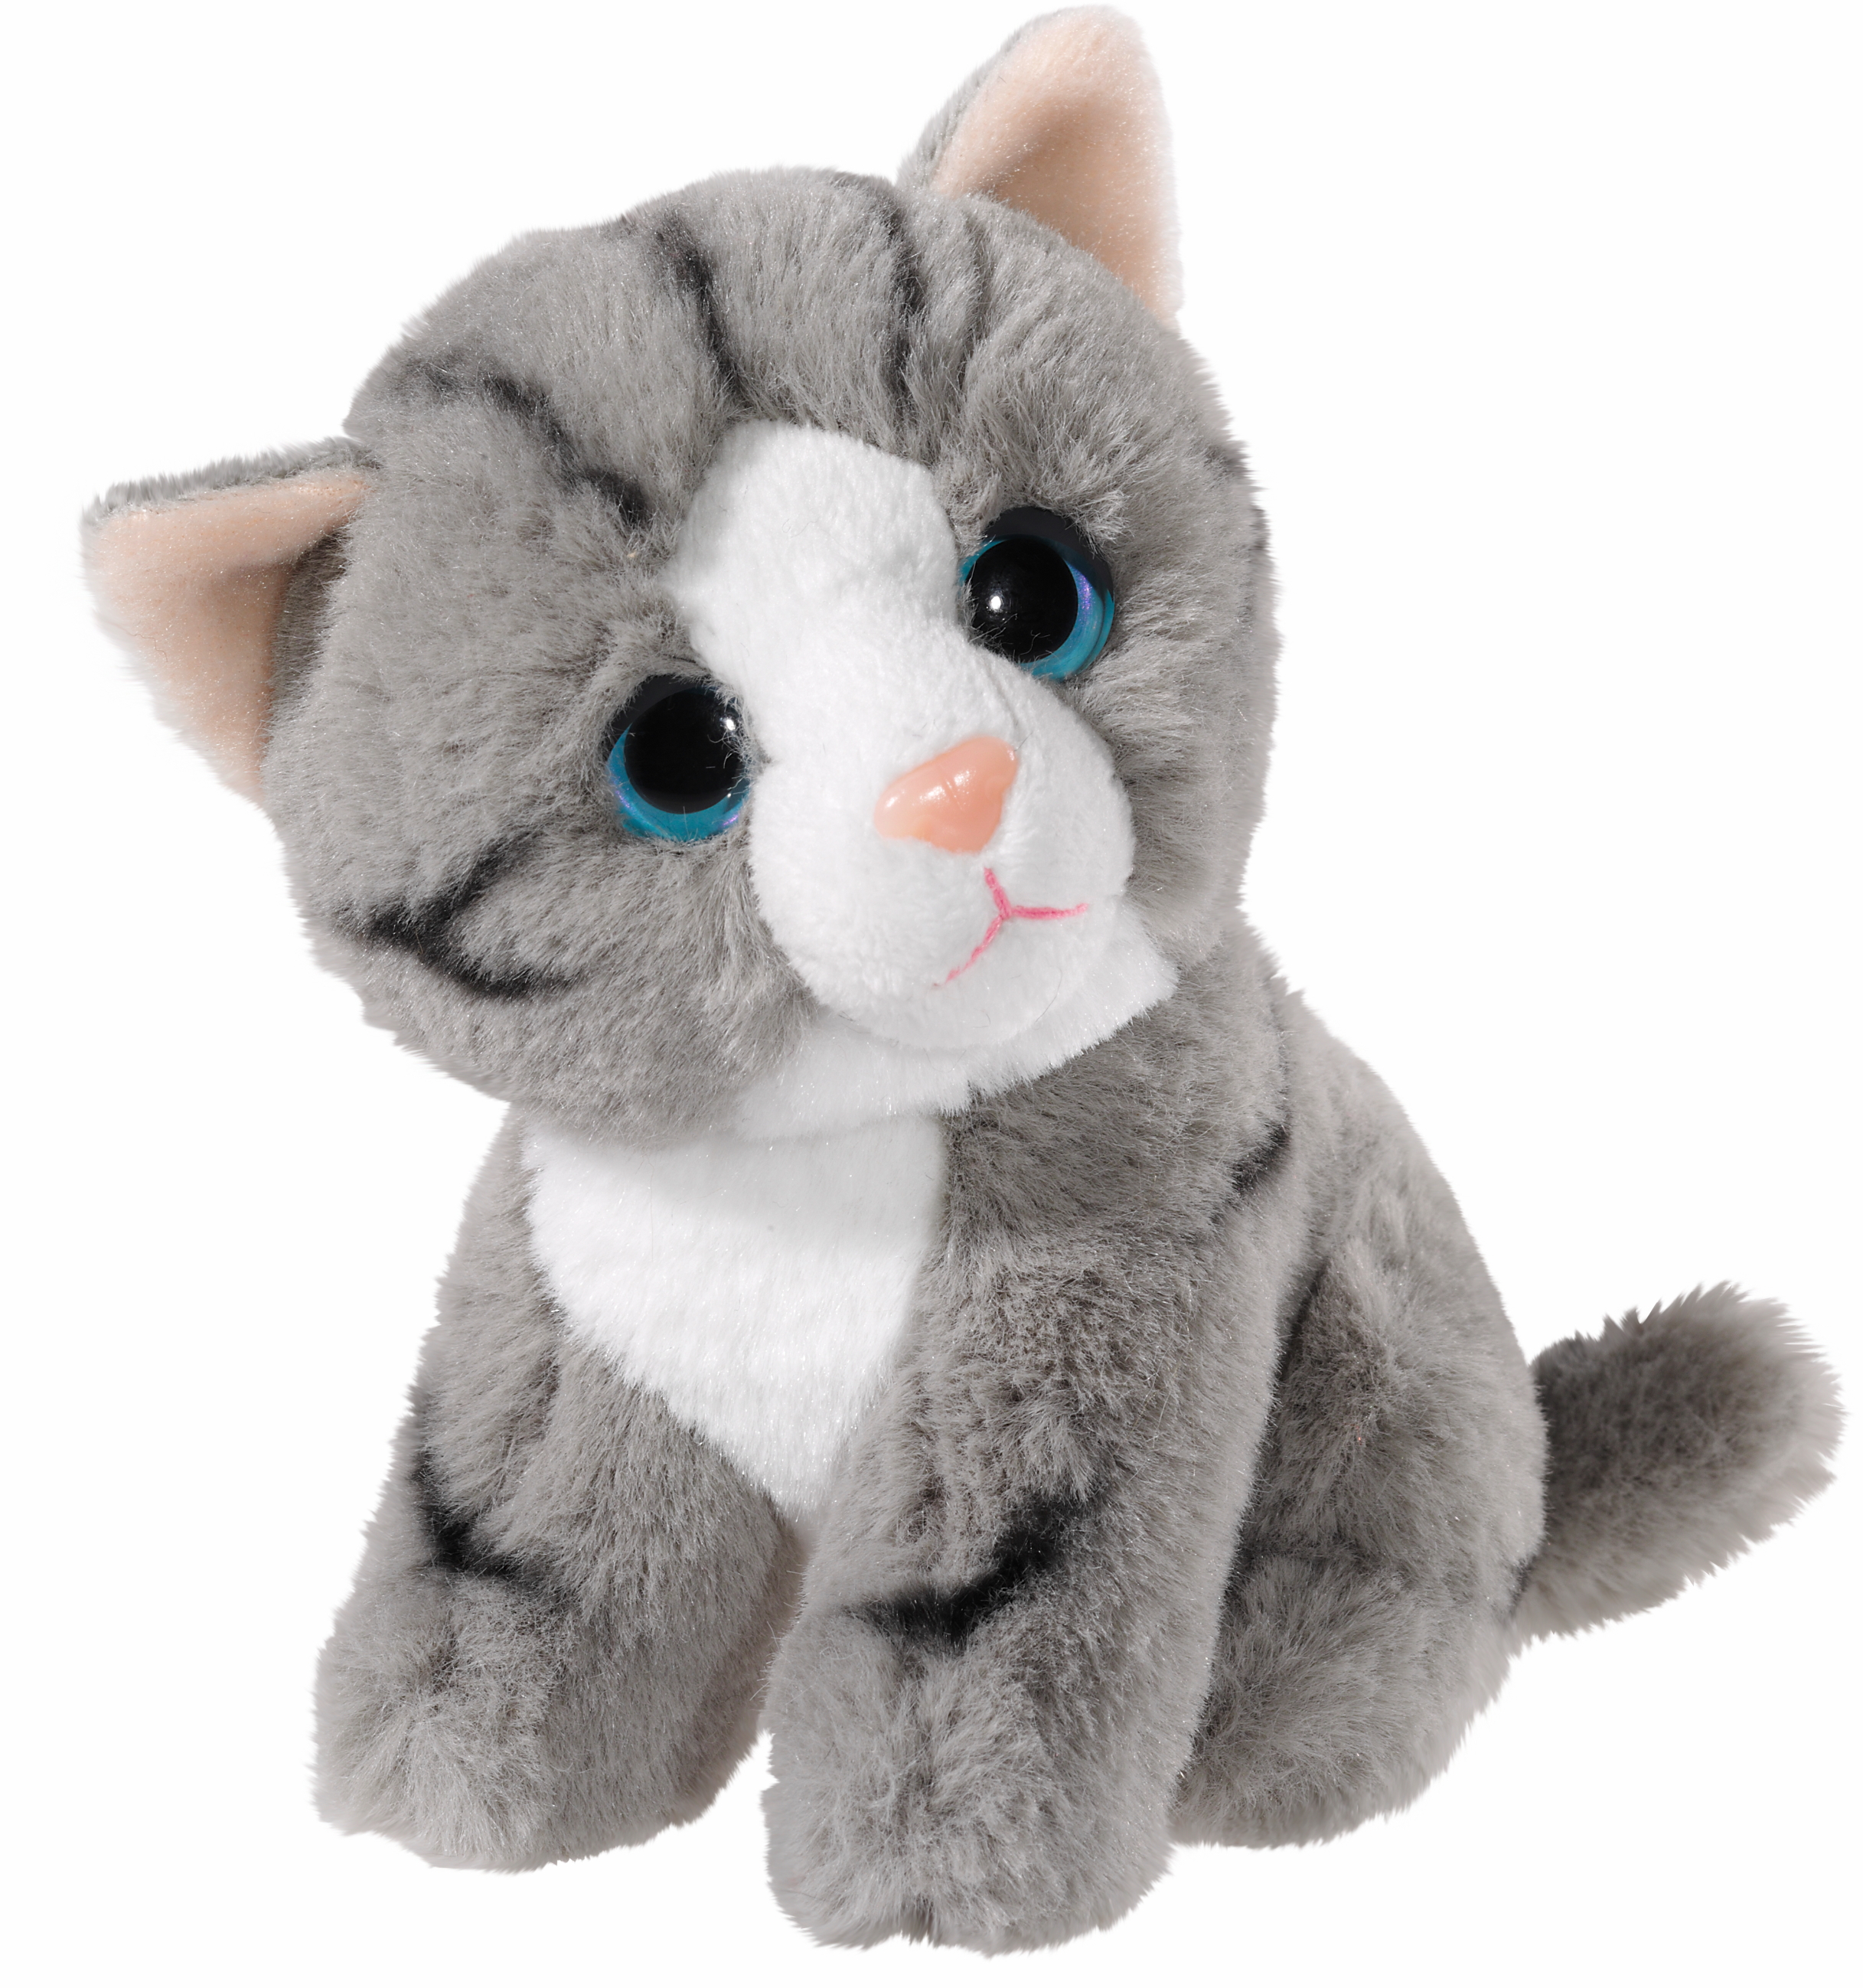 Heunec putzige Katze aus der Mini Mi Serie in grau-weiß und 14cm Größe